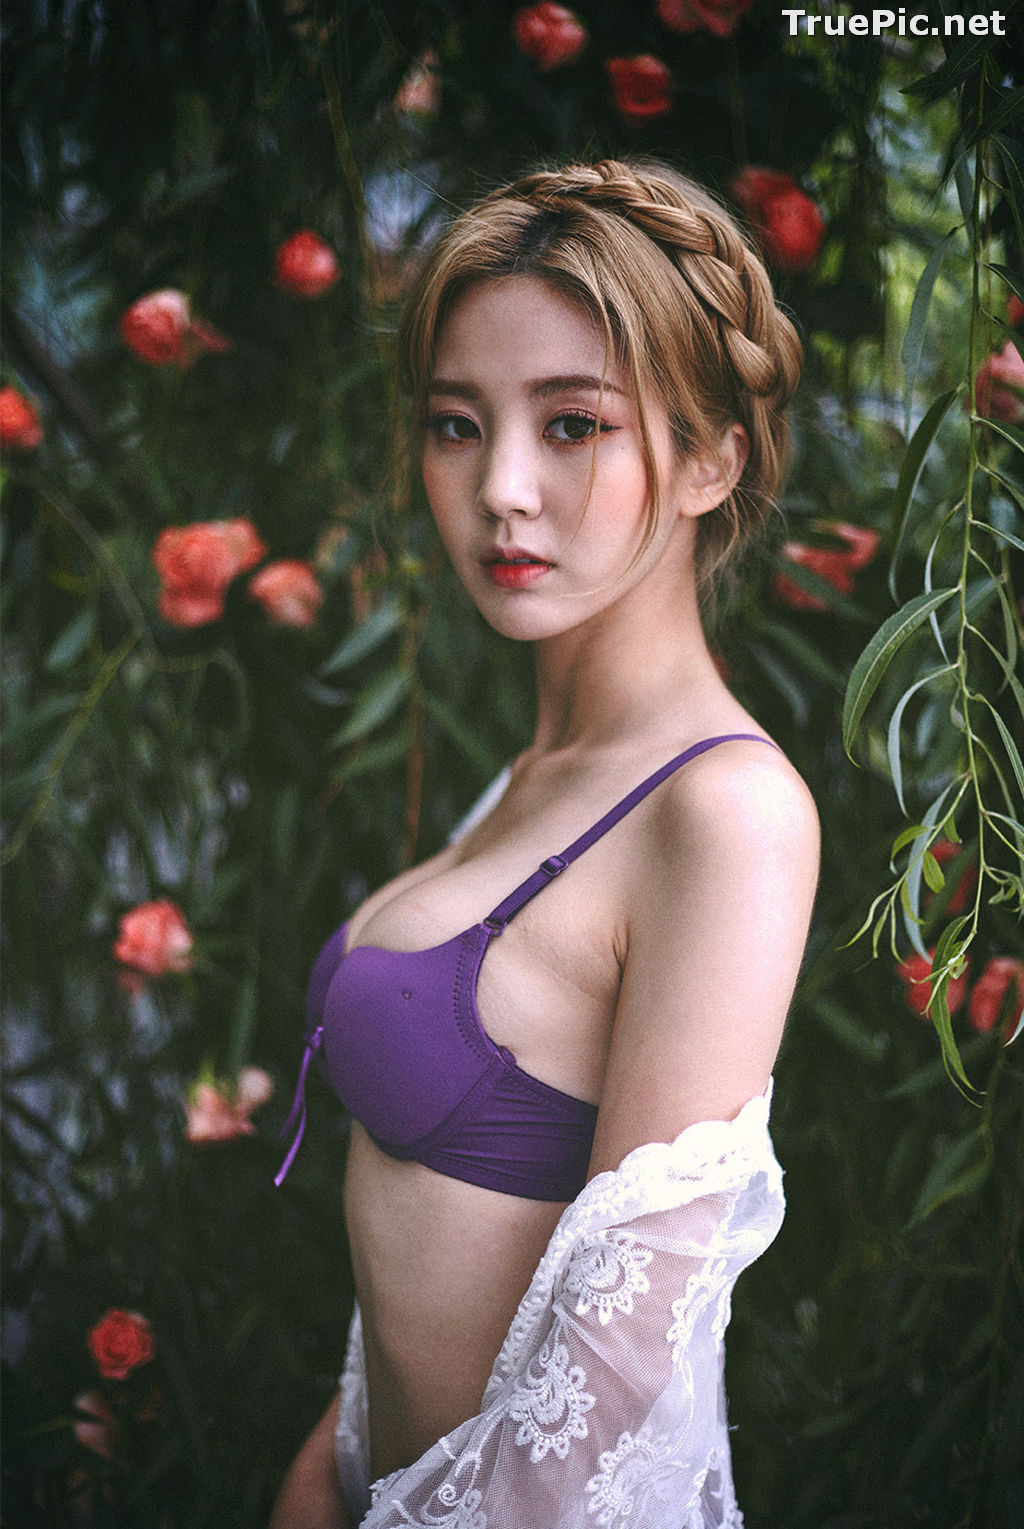 Image Lee Chae Eun - Korean Fashion Model - Purple Lingerie Set - TruePic.net - Picture-12